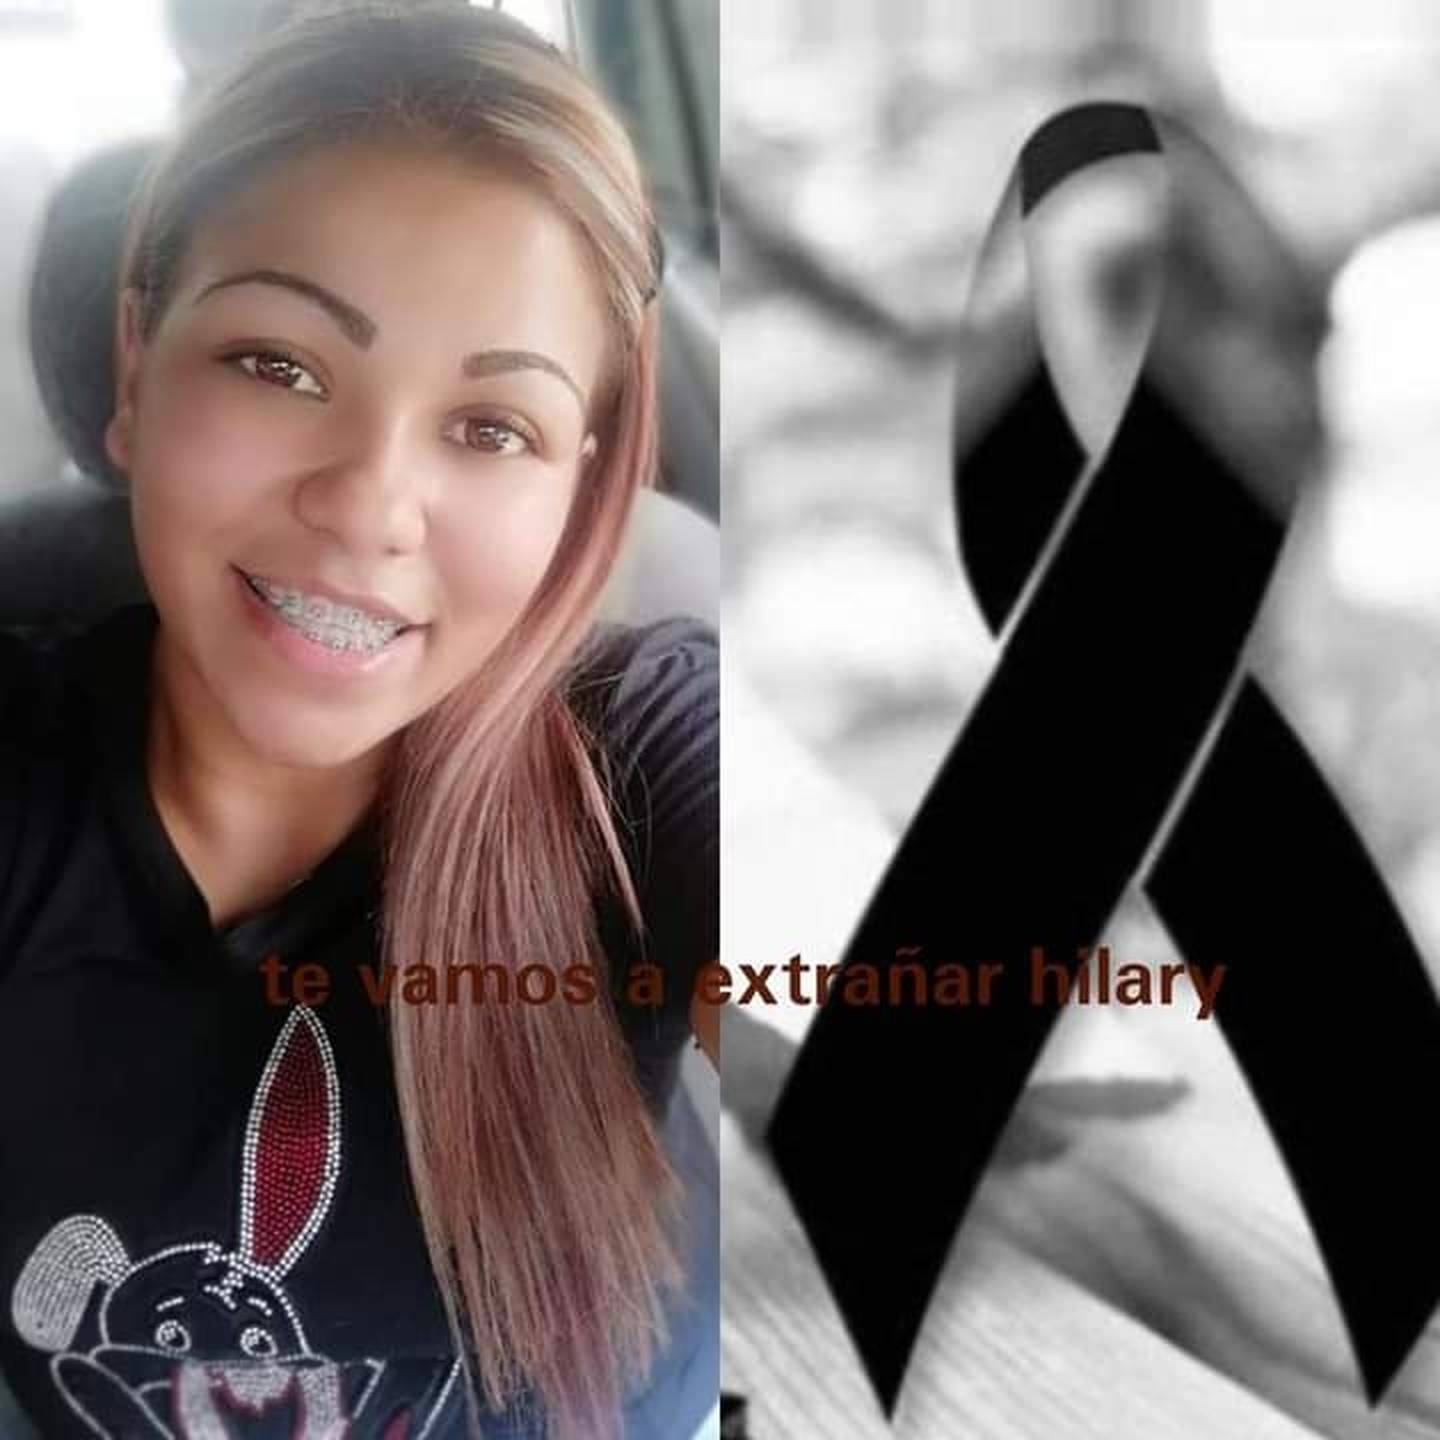 Hilary Soto Núñez, joven que murió por un supuesto disparo accidental de parte de su novio en Pavas. Foto tomada de Facebook.